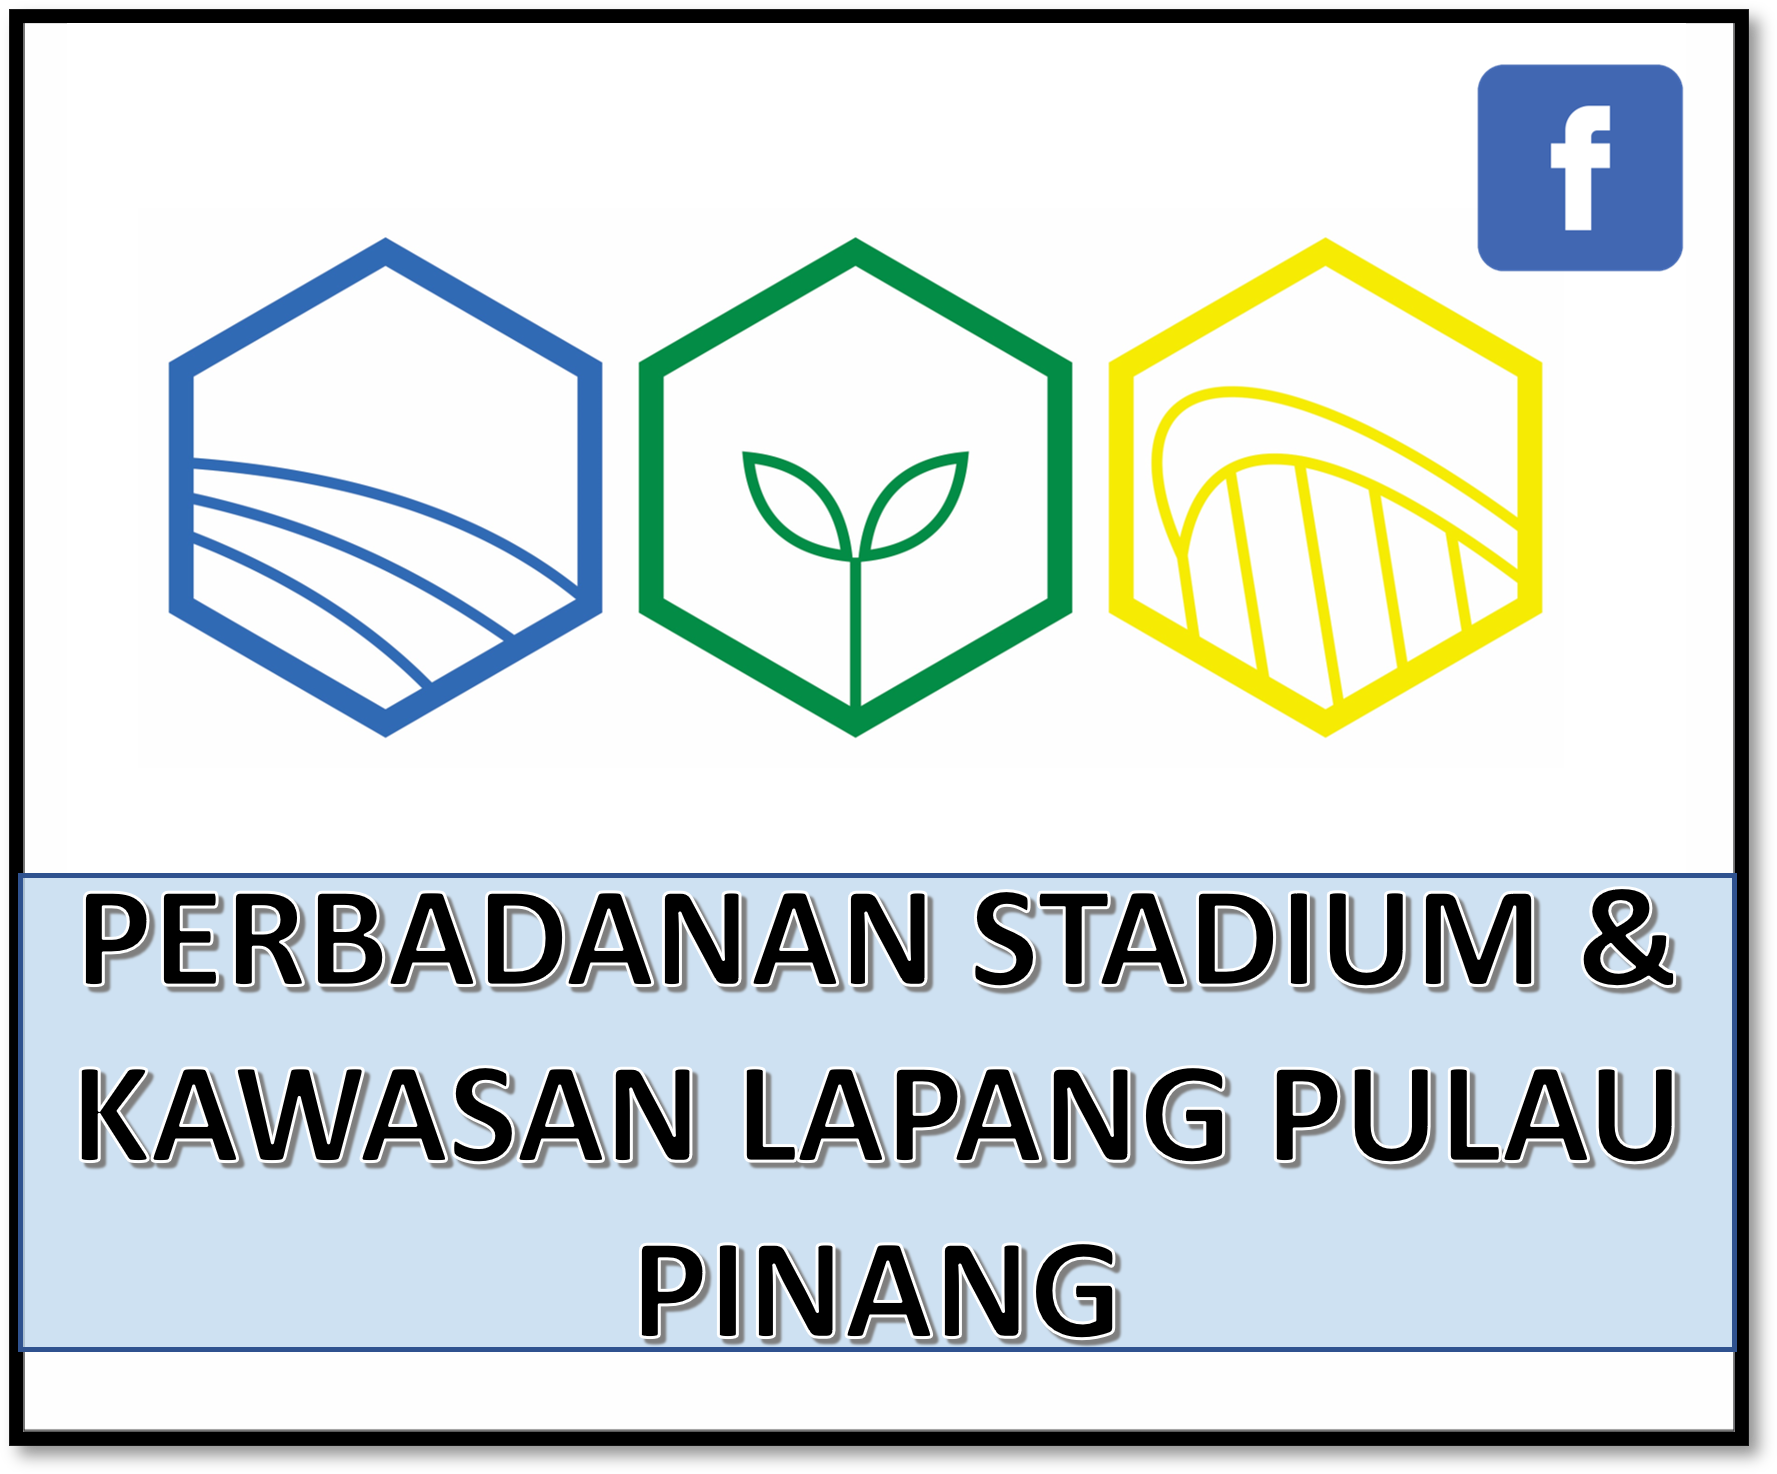 Perbadanan Stadium & Kawasan Lapang Pulau Pinang